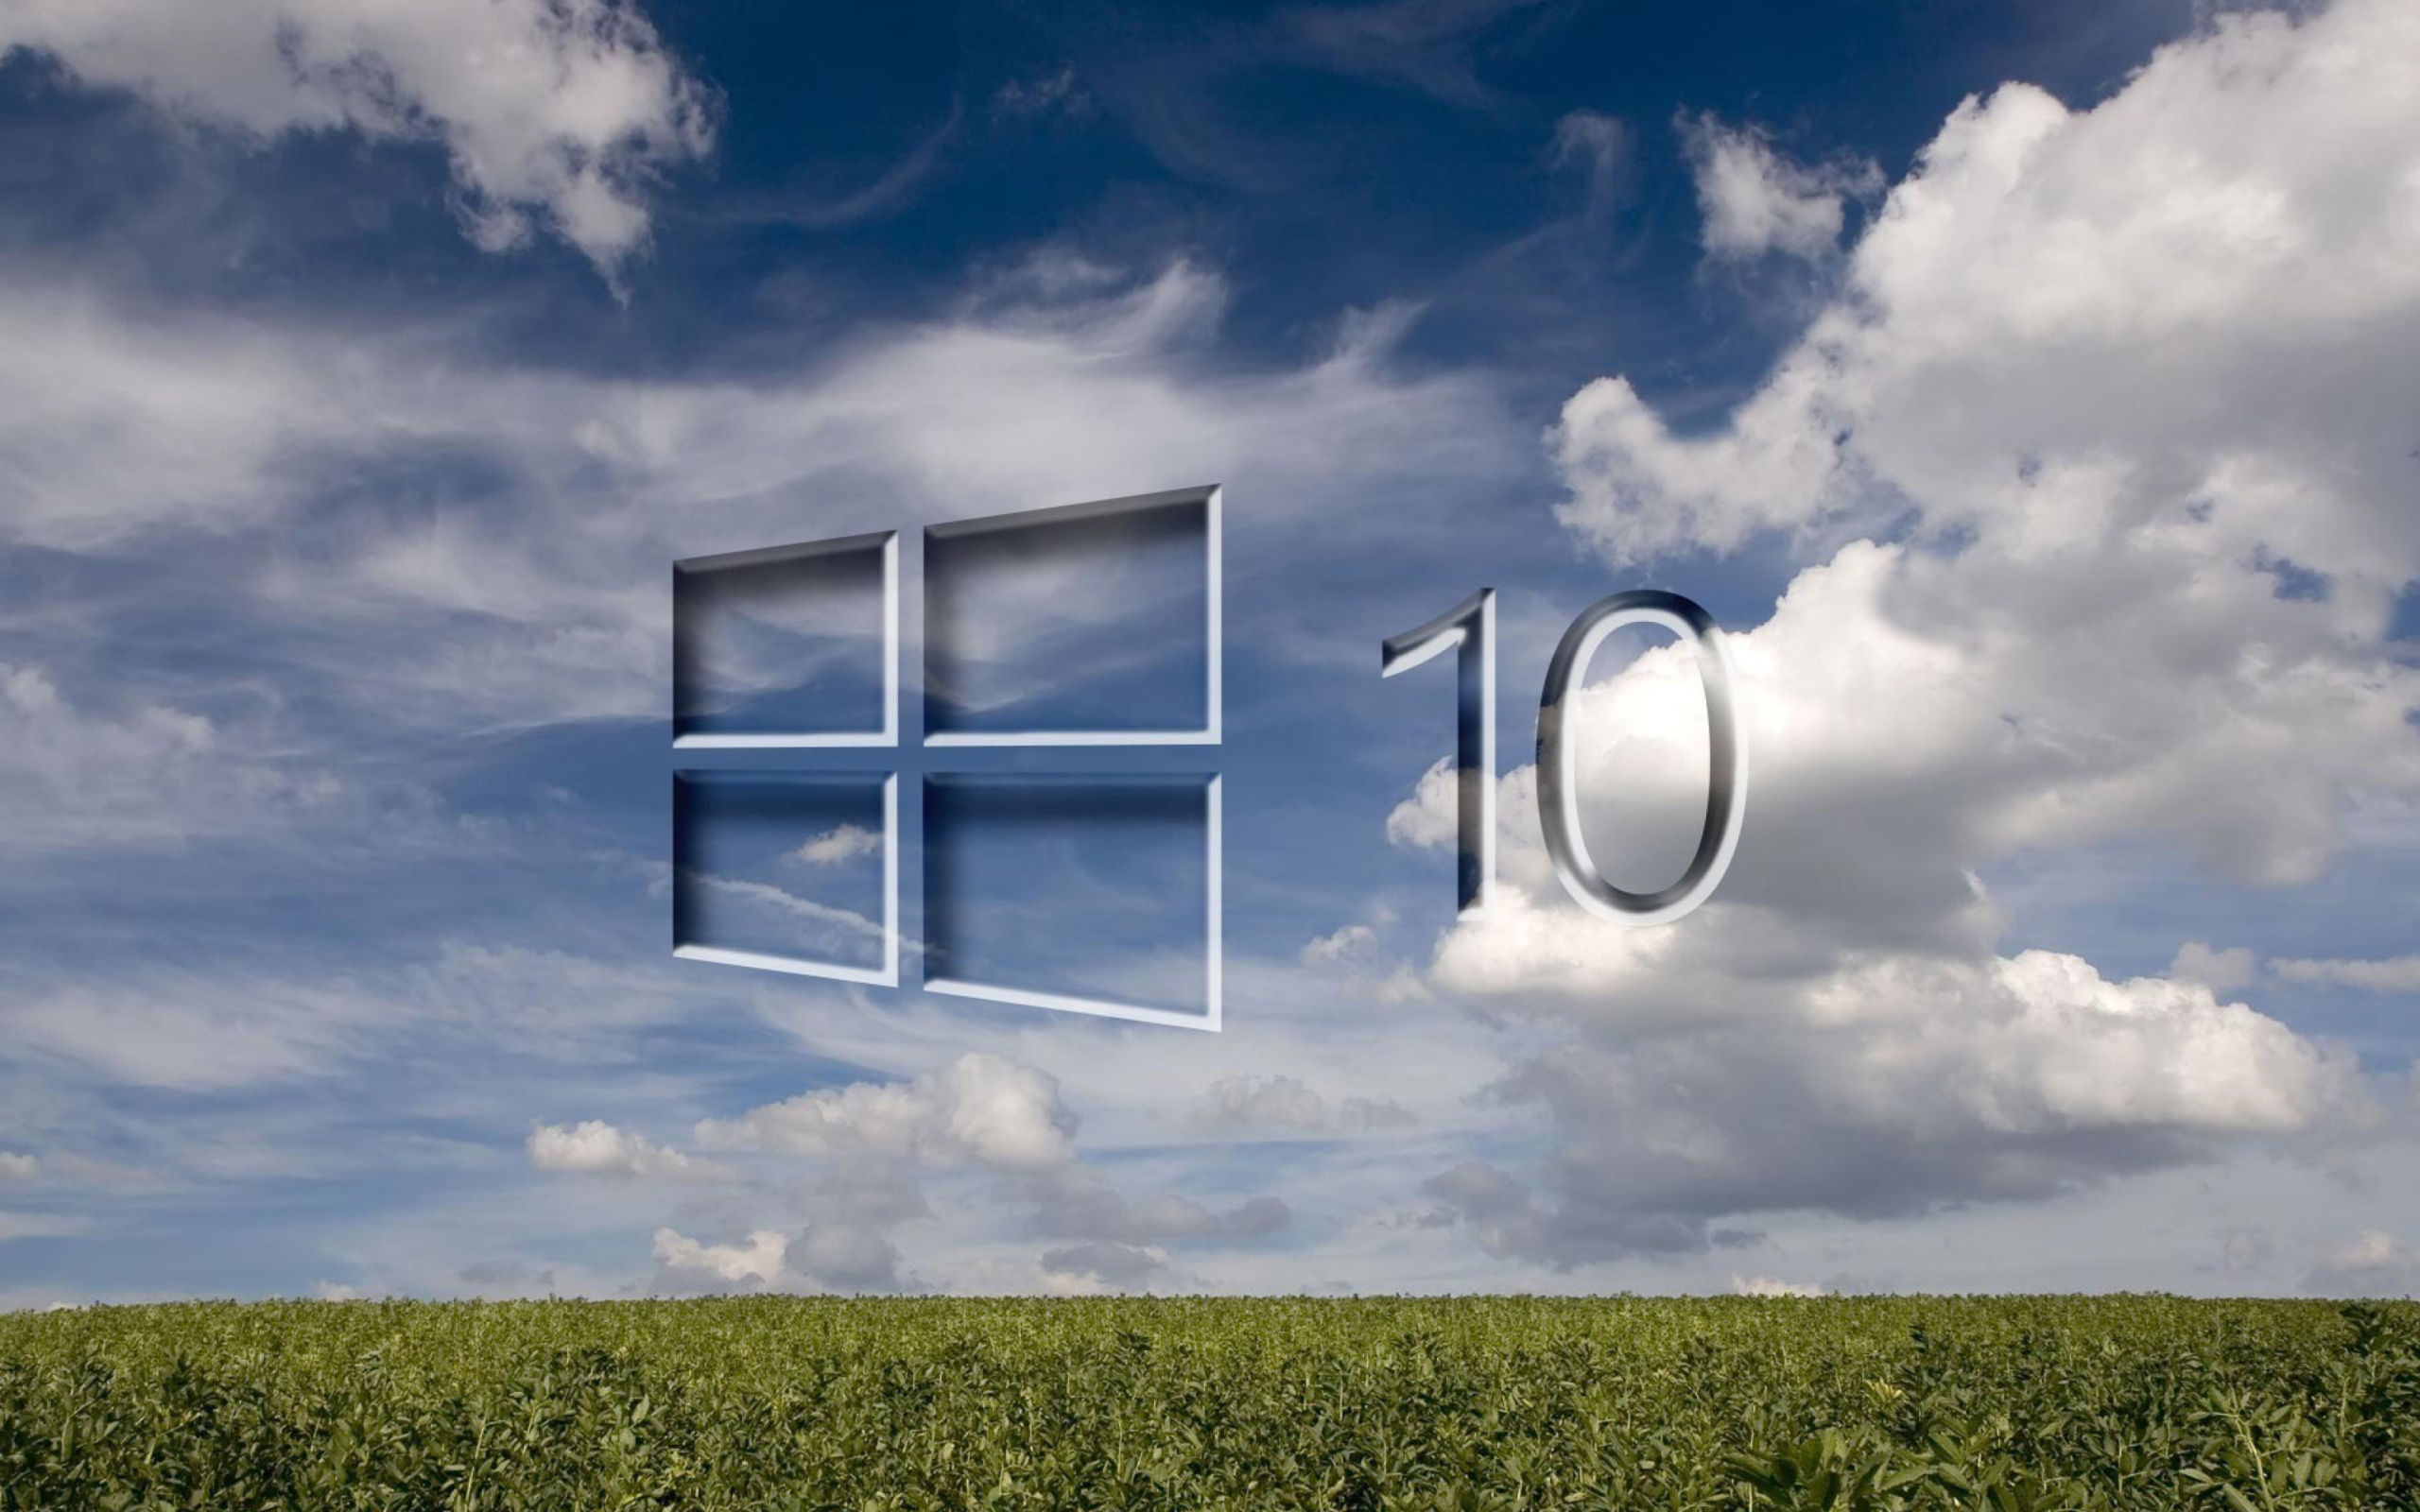 Windows 10 Grass Field wallpaper 2560x1600